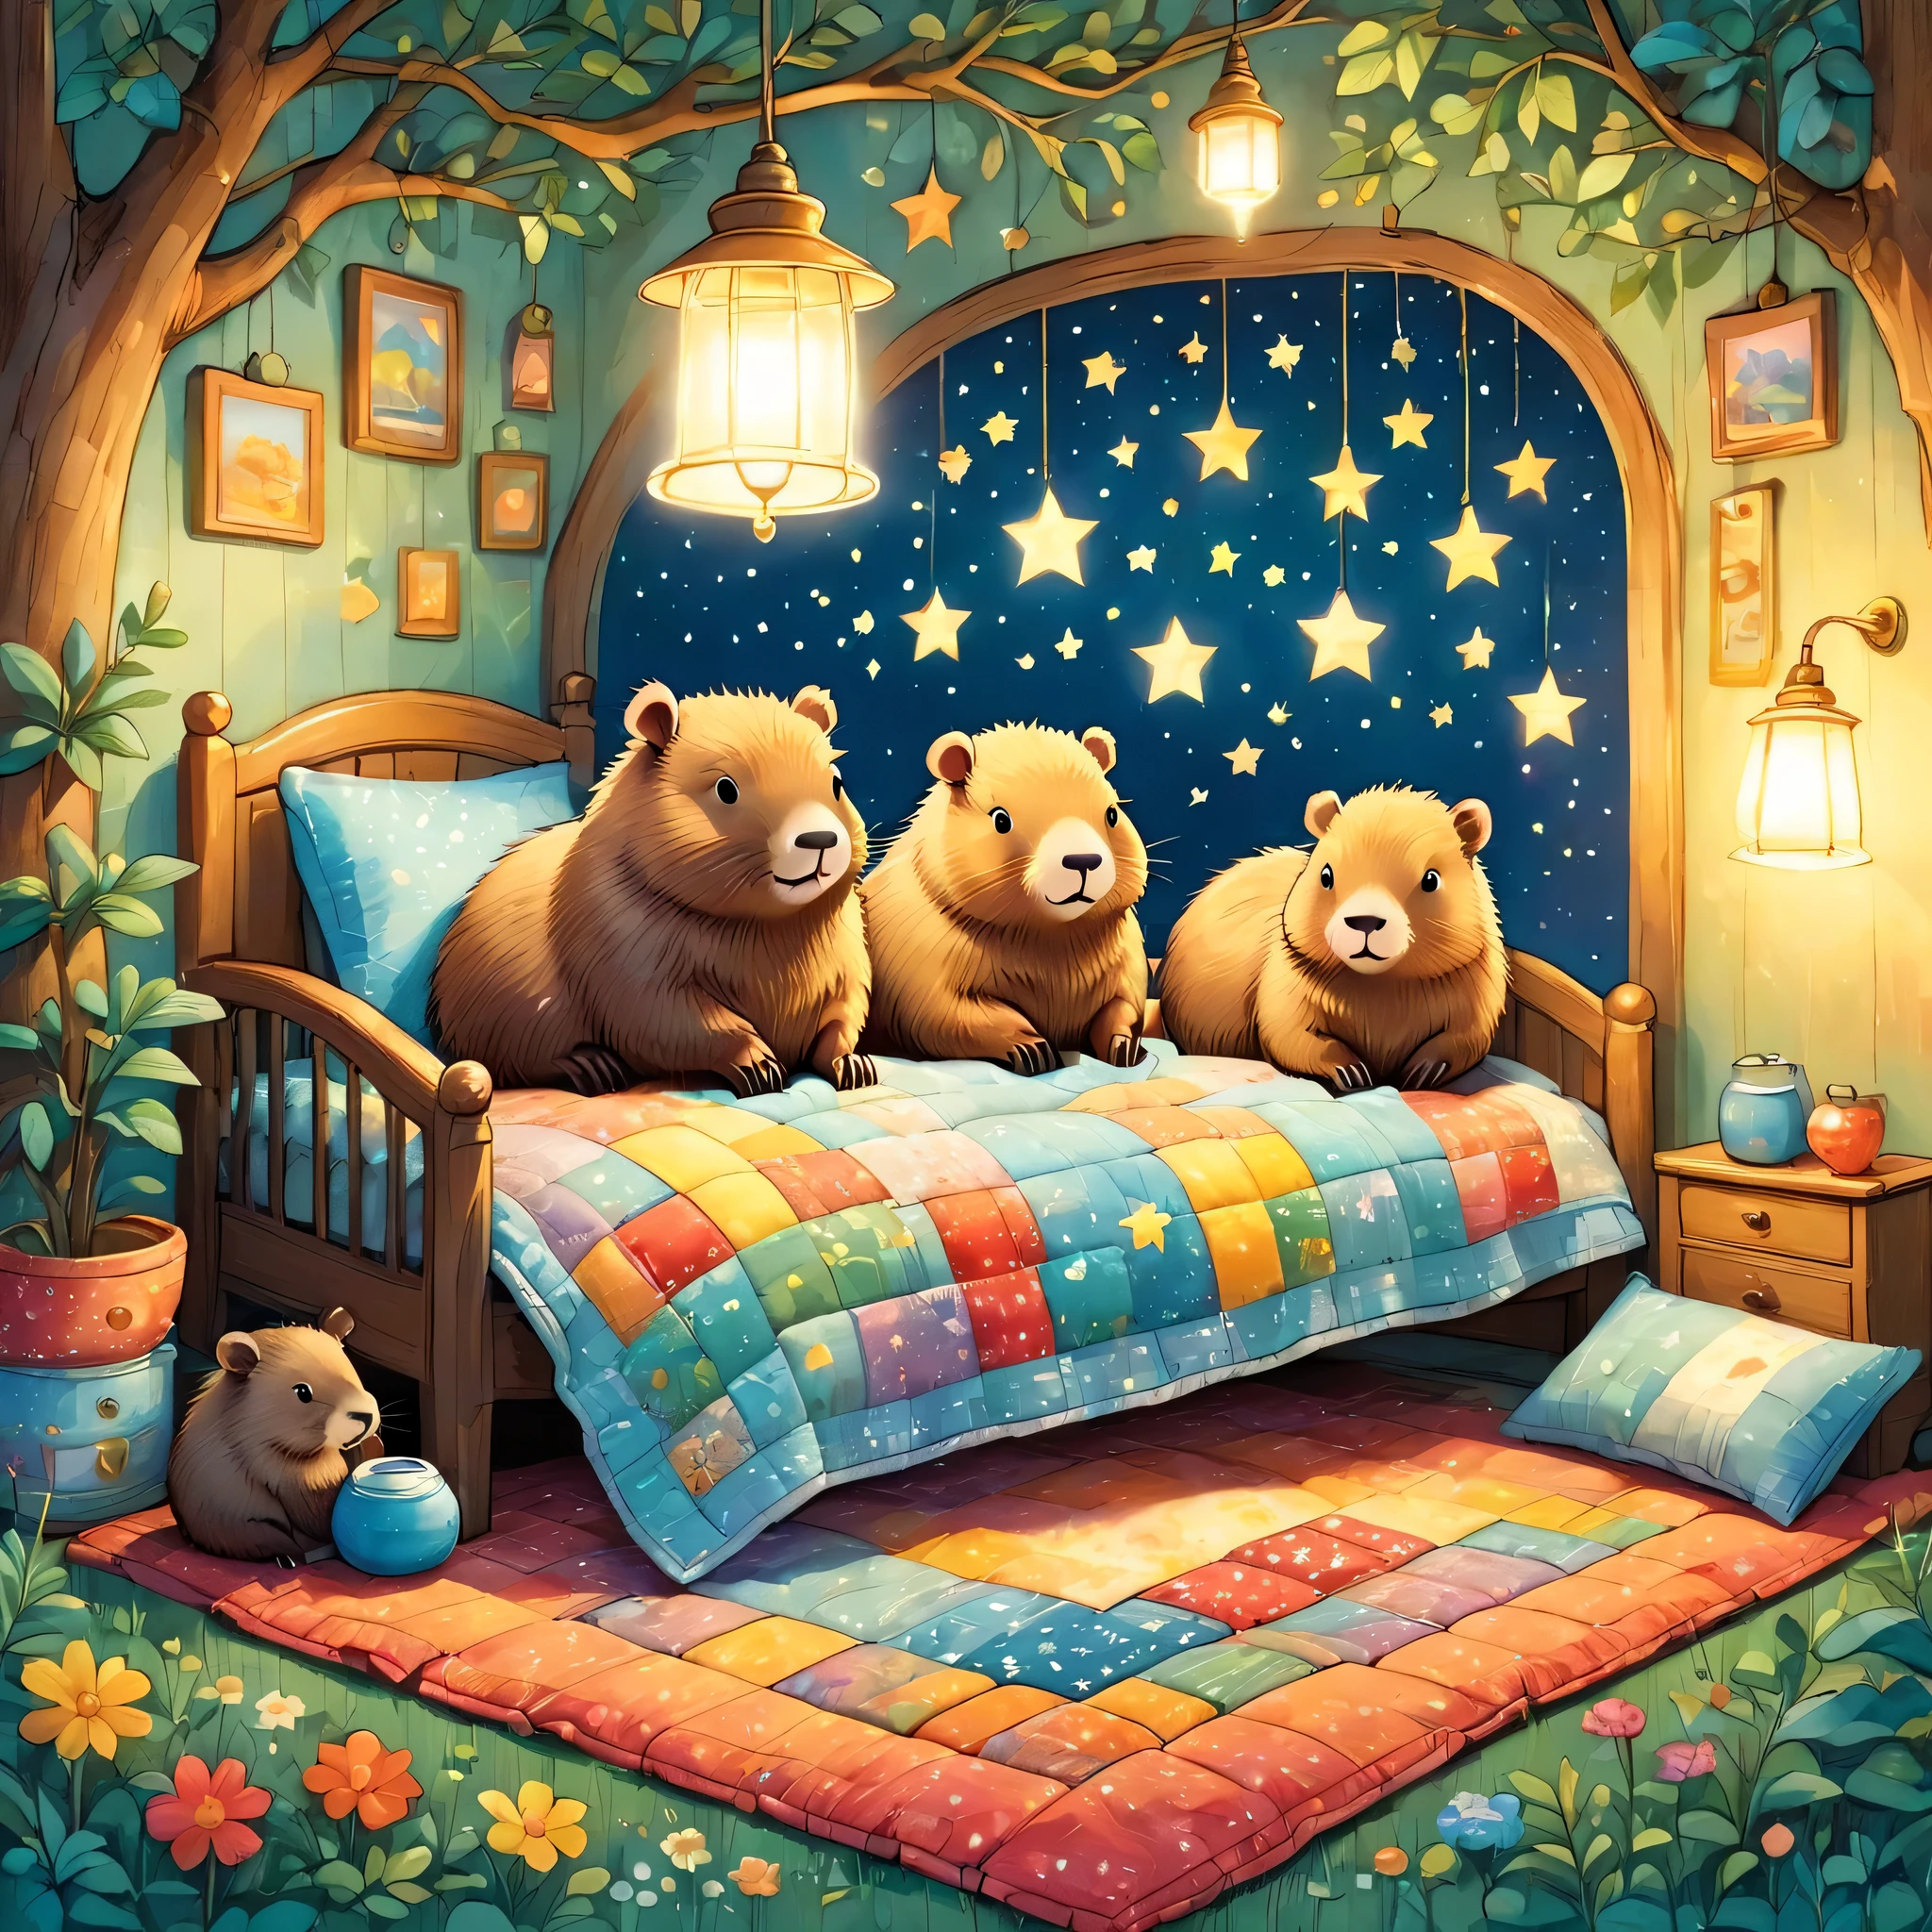 mignonUne illustrationカピバラの家,Famille Capybara:animal:hiberner:mignon:se nicher:dormir:confortable et chaleureux:Semble heureux,Une illustration,populaire,couleurful,dessiner avec des lignes épaisses,couleur,faible,lampe lumière,The hiberner Famille Capybara is adormir.:faire des rêves heureux,La maison est chaleureuse et pleine de bonheur,,couleurful,Fantaisie,fantaisie,patchwork:édredon,détails détaillés,duveteux,style randolph caldecott,Rich couleurs,Cast couleurful spells,concentré,La meilleure configuration,composition parfaite,accent,Une illustration that children will enjoy,Pour les enfants,se sentir chaud,merveilleux comme un rêve,Capybaras joyeux et amusants,petit,Cast couleurful spells,pétillant,anatomiquement correct